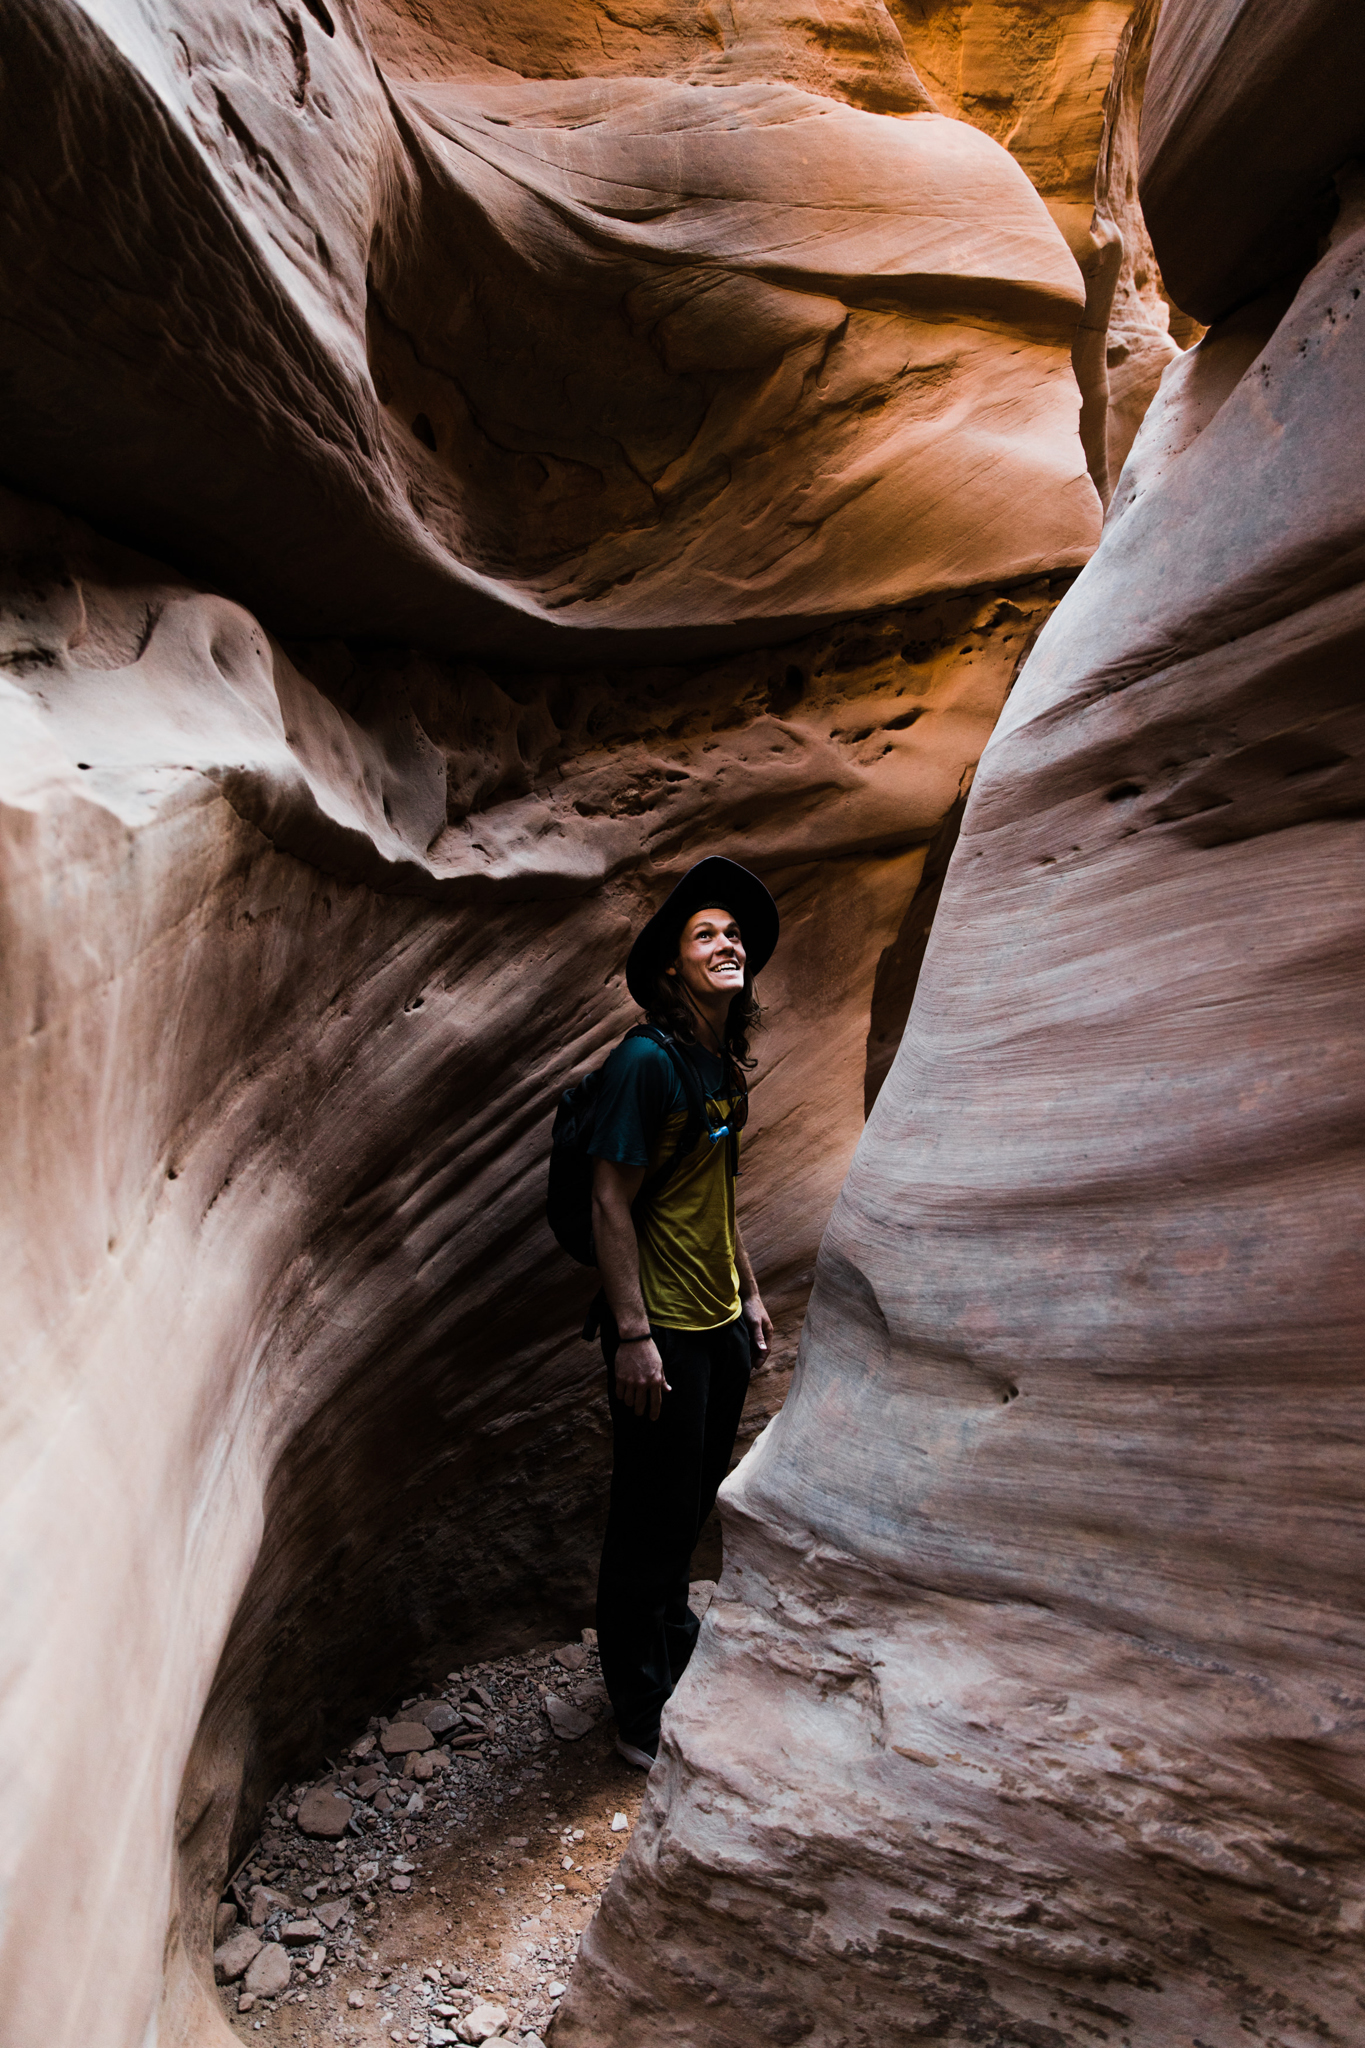 exploring slot canyons in utah | utah and california adventure elopement photographers | the hearnes adventure photography | www.thehearnes.com